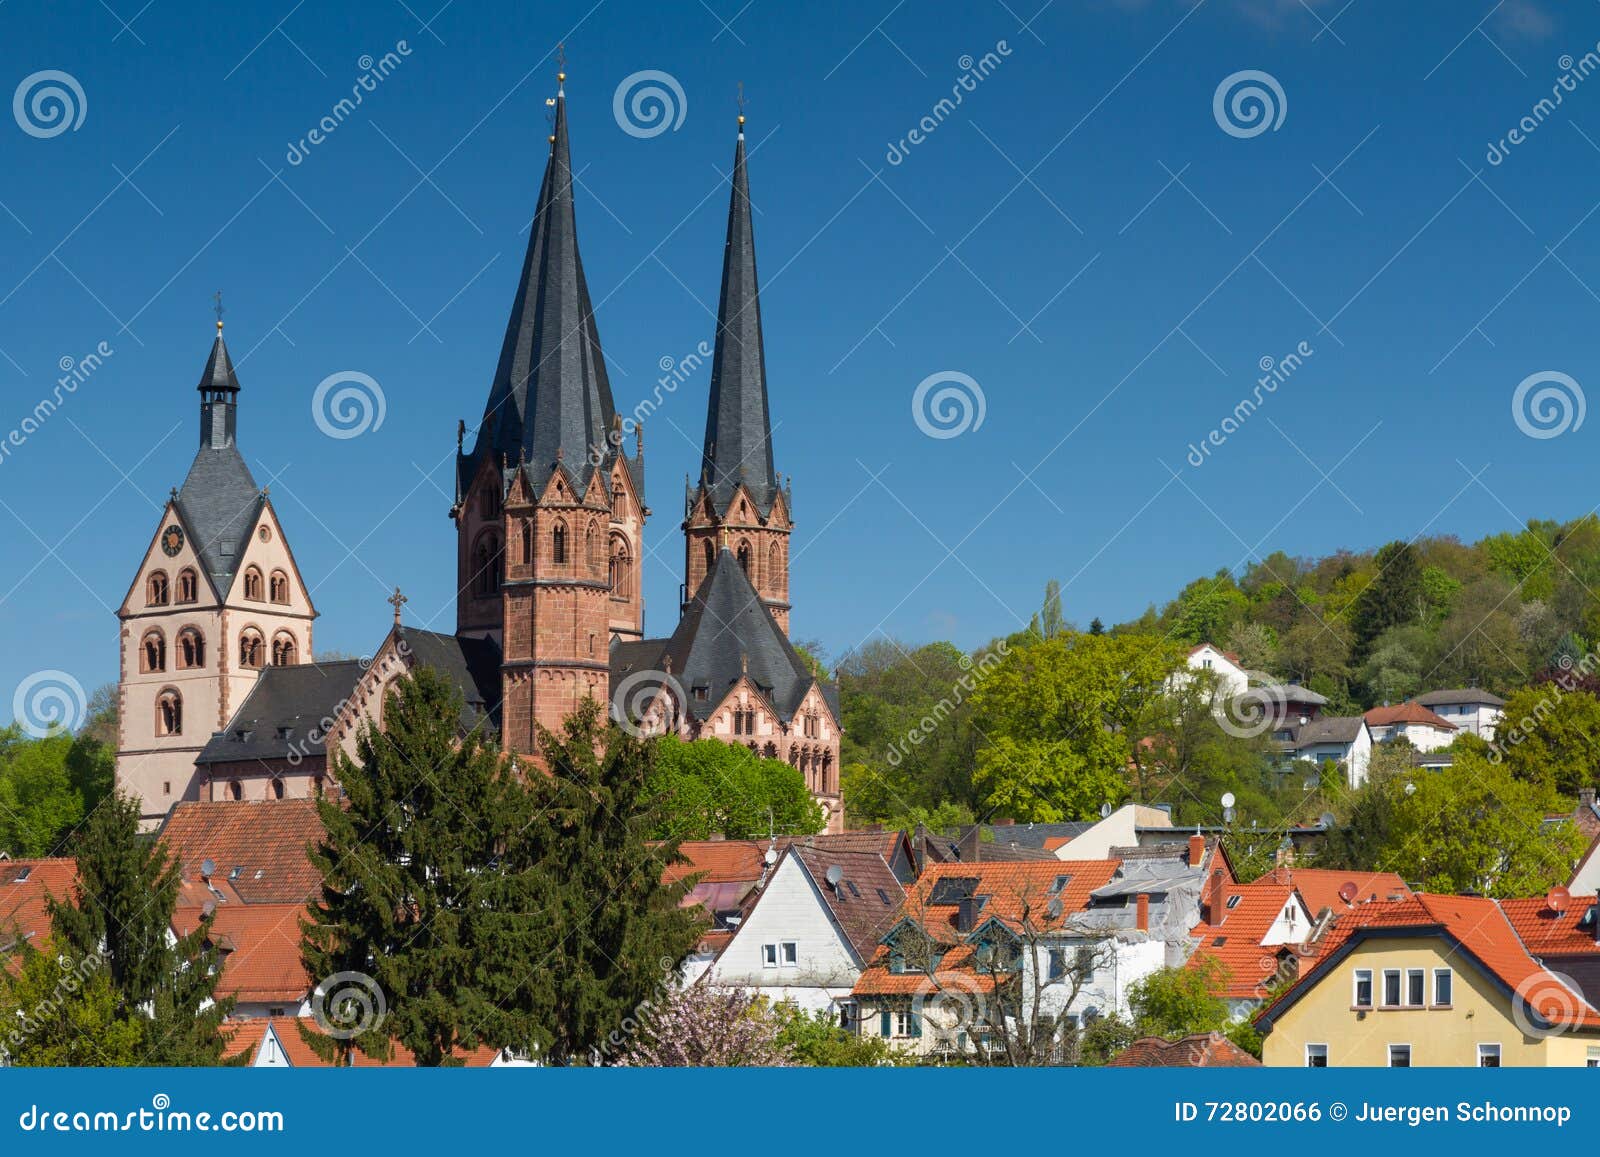 gothic marienkirche of gelnhausen